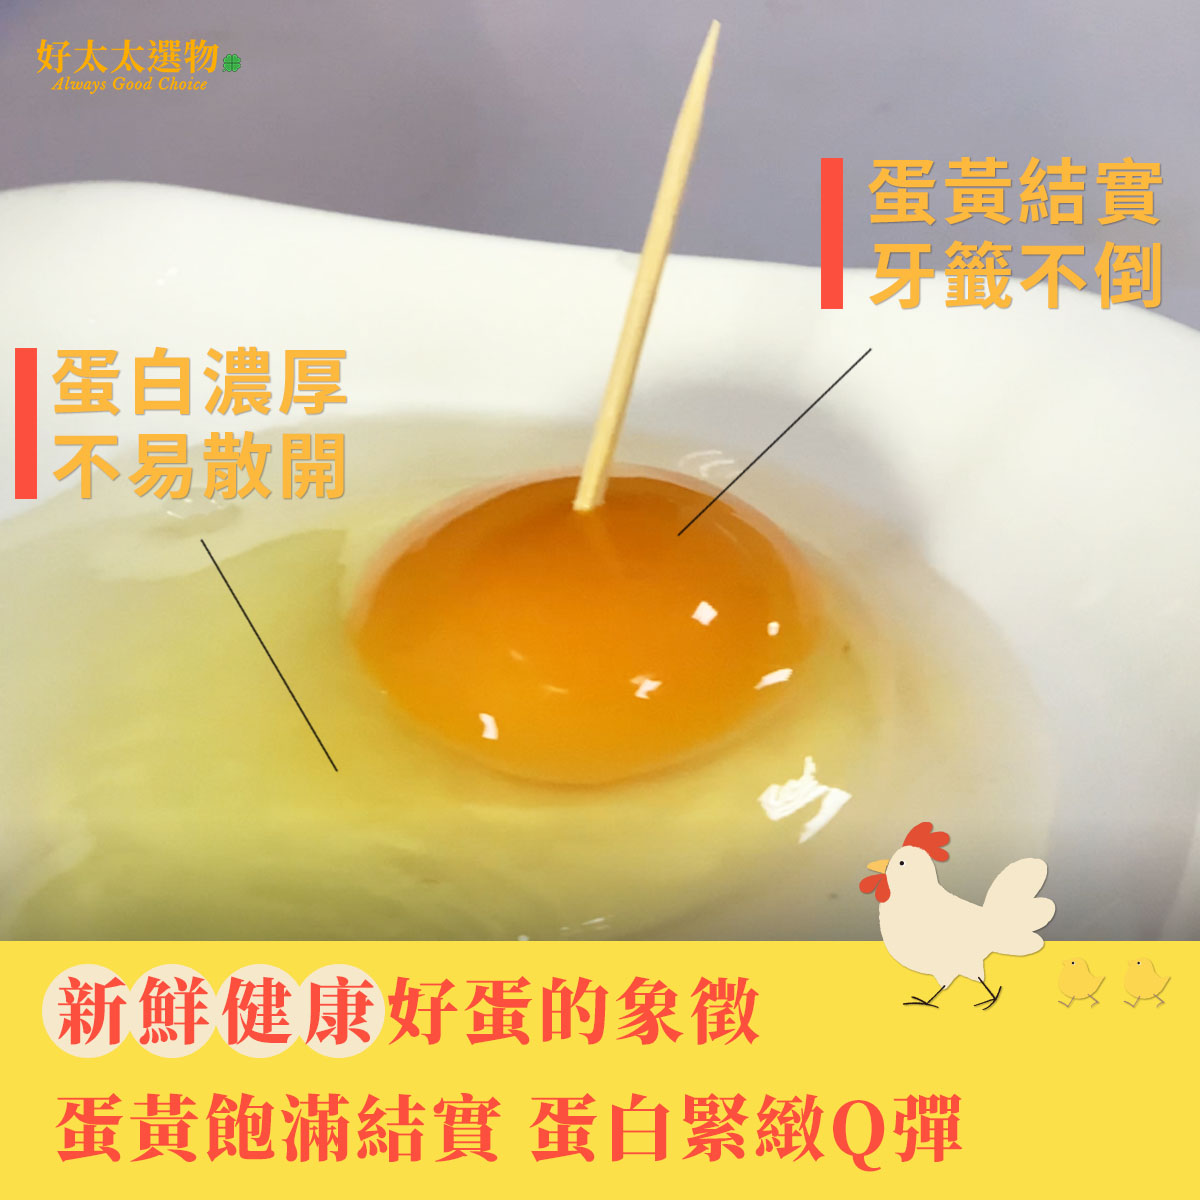 新鮮健康好蛋的象徵 蛋黃插牙籤也不倒 蛋白濃厚不易散開